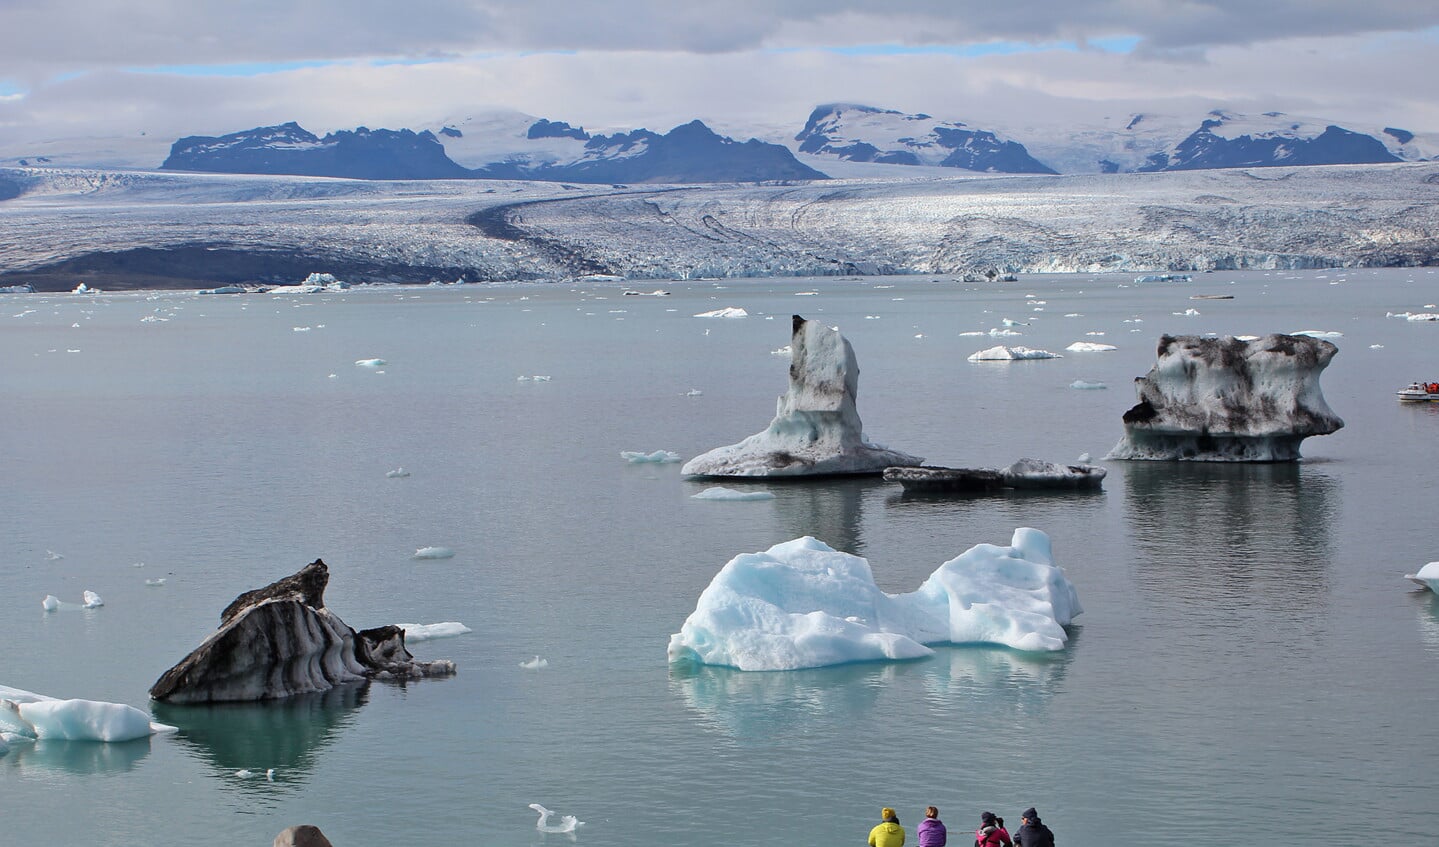 De gletsjer Vatnajökull spuugt als een enorme ijsklontjesmachine stukken ijs uit, die onder meer via het gletsjermeer Jökulsárlón naar zee drijven.